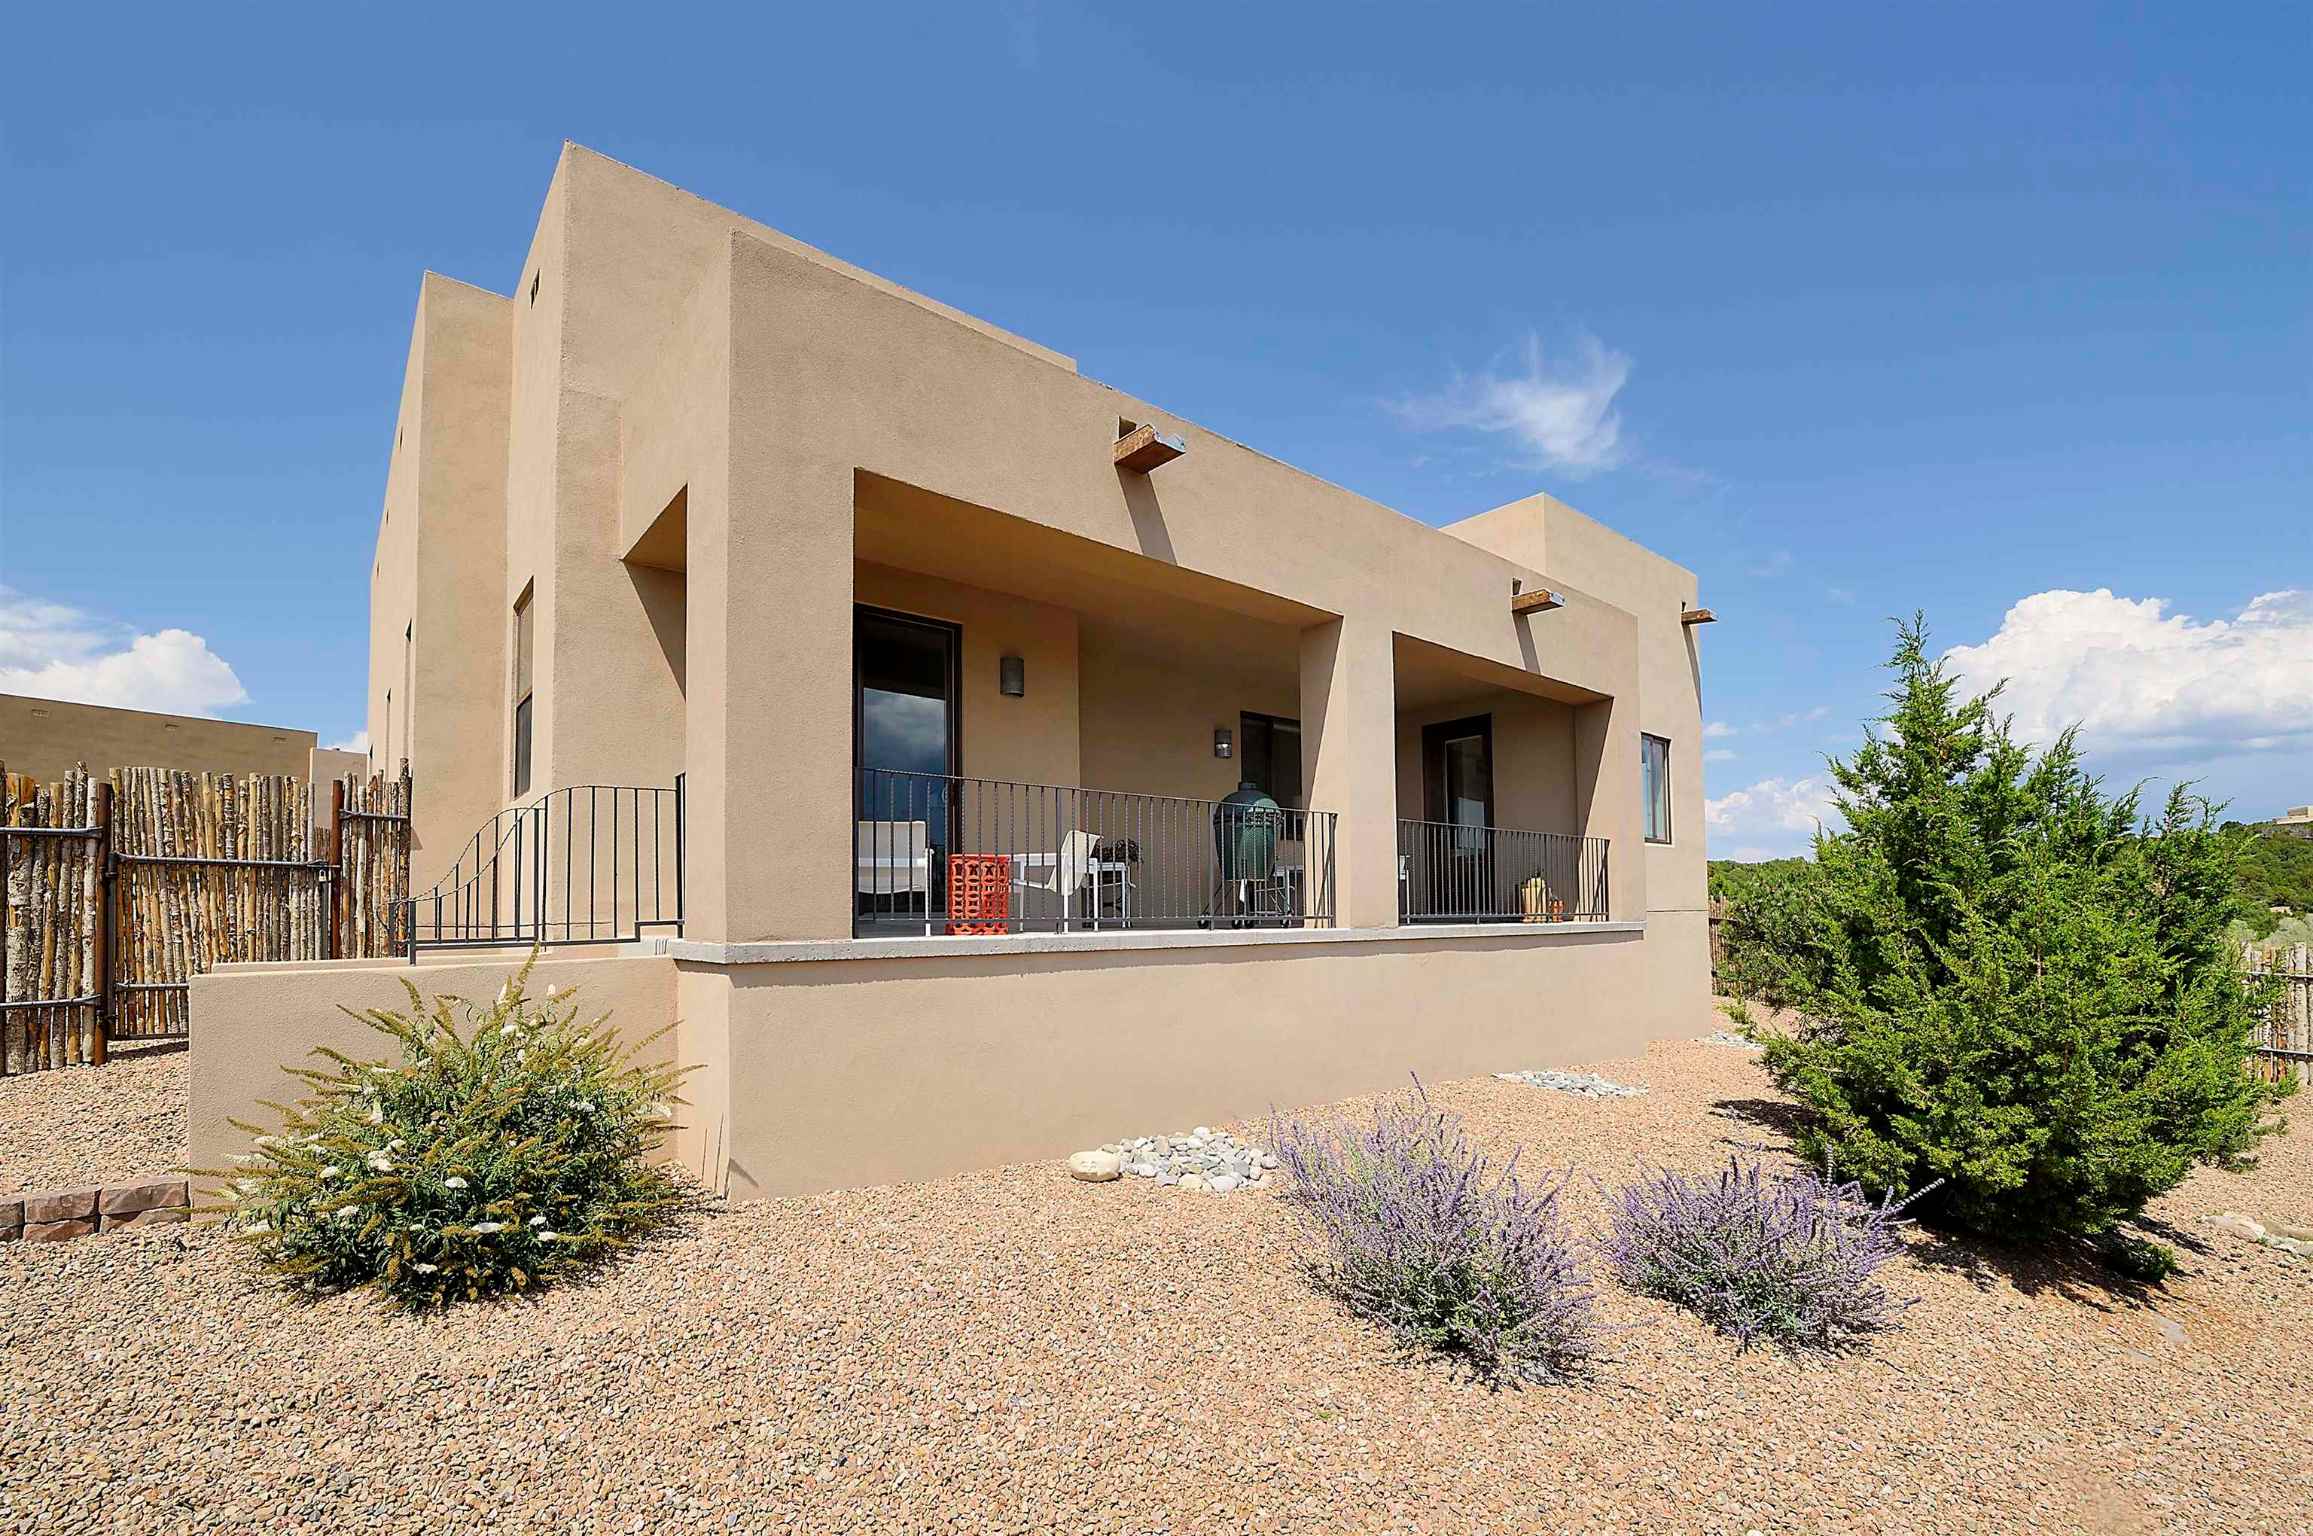 4 Via Secunda, Santa Fe, New Mexico 87507-8050, 3 Bedrooms Bedrooms, ,3 BathroomsBathrooms,Residential,For Sale,4 Via Secunda,202104032